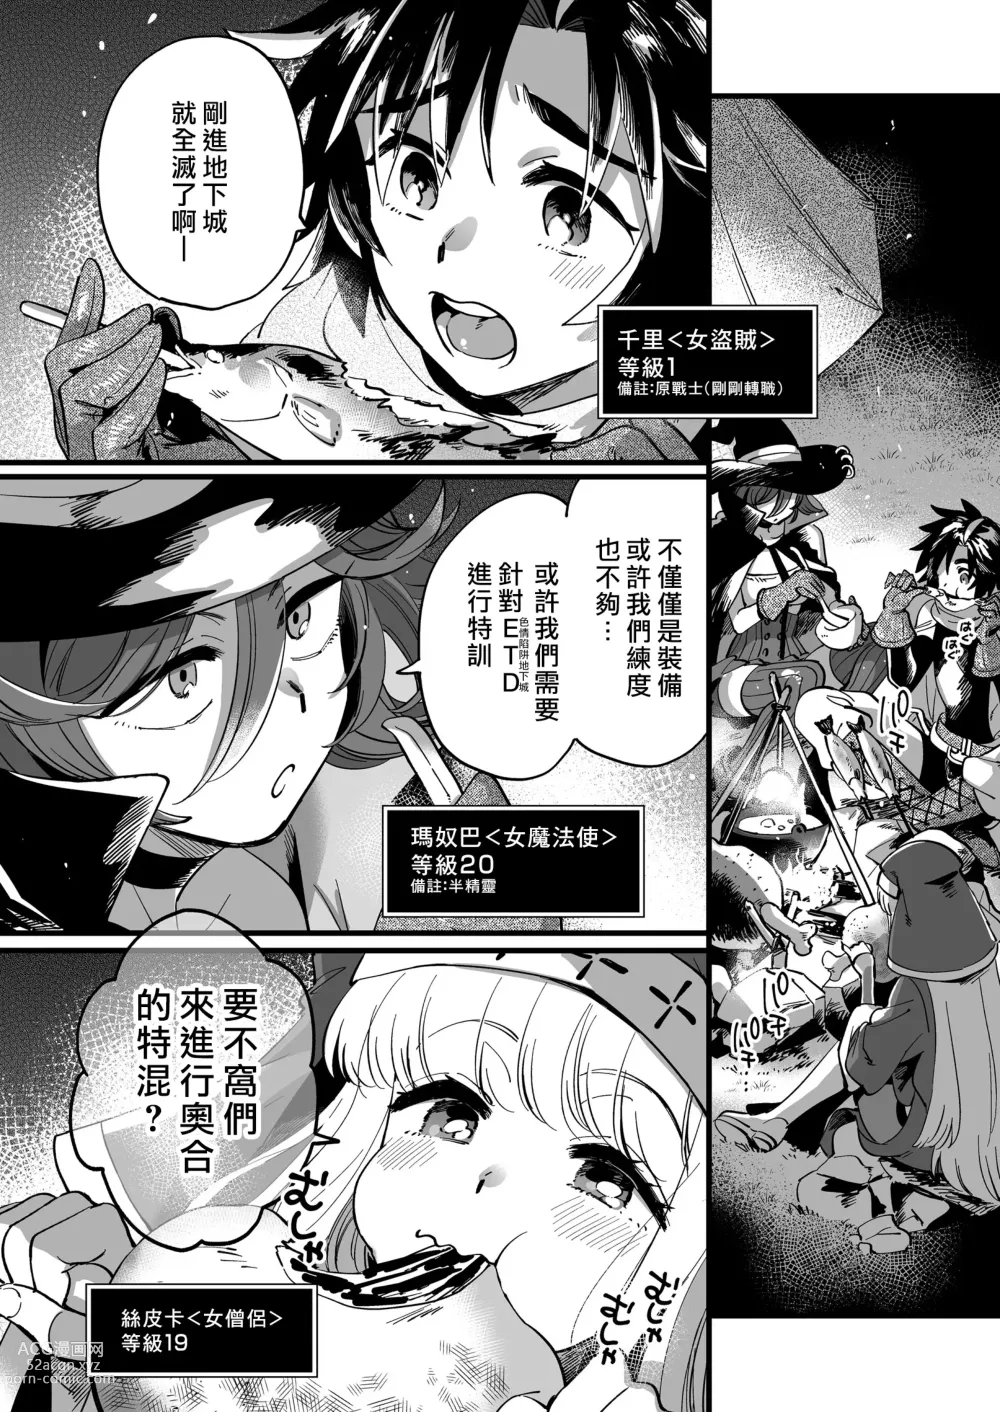 Page 5 of doujinshi 關係很好的女冒險者們似乎正在進行秘密❤特訓